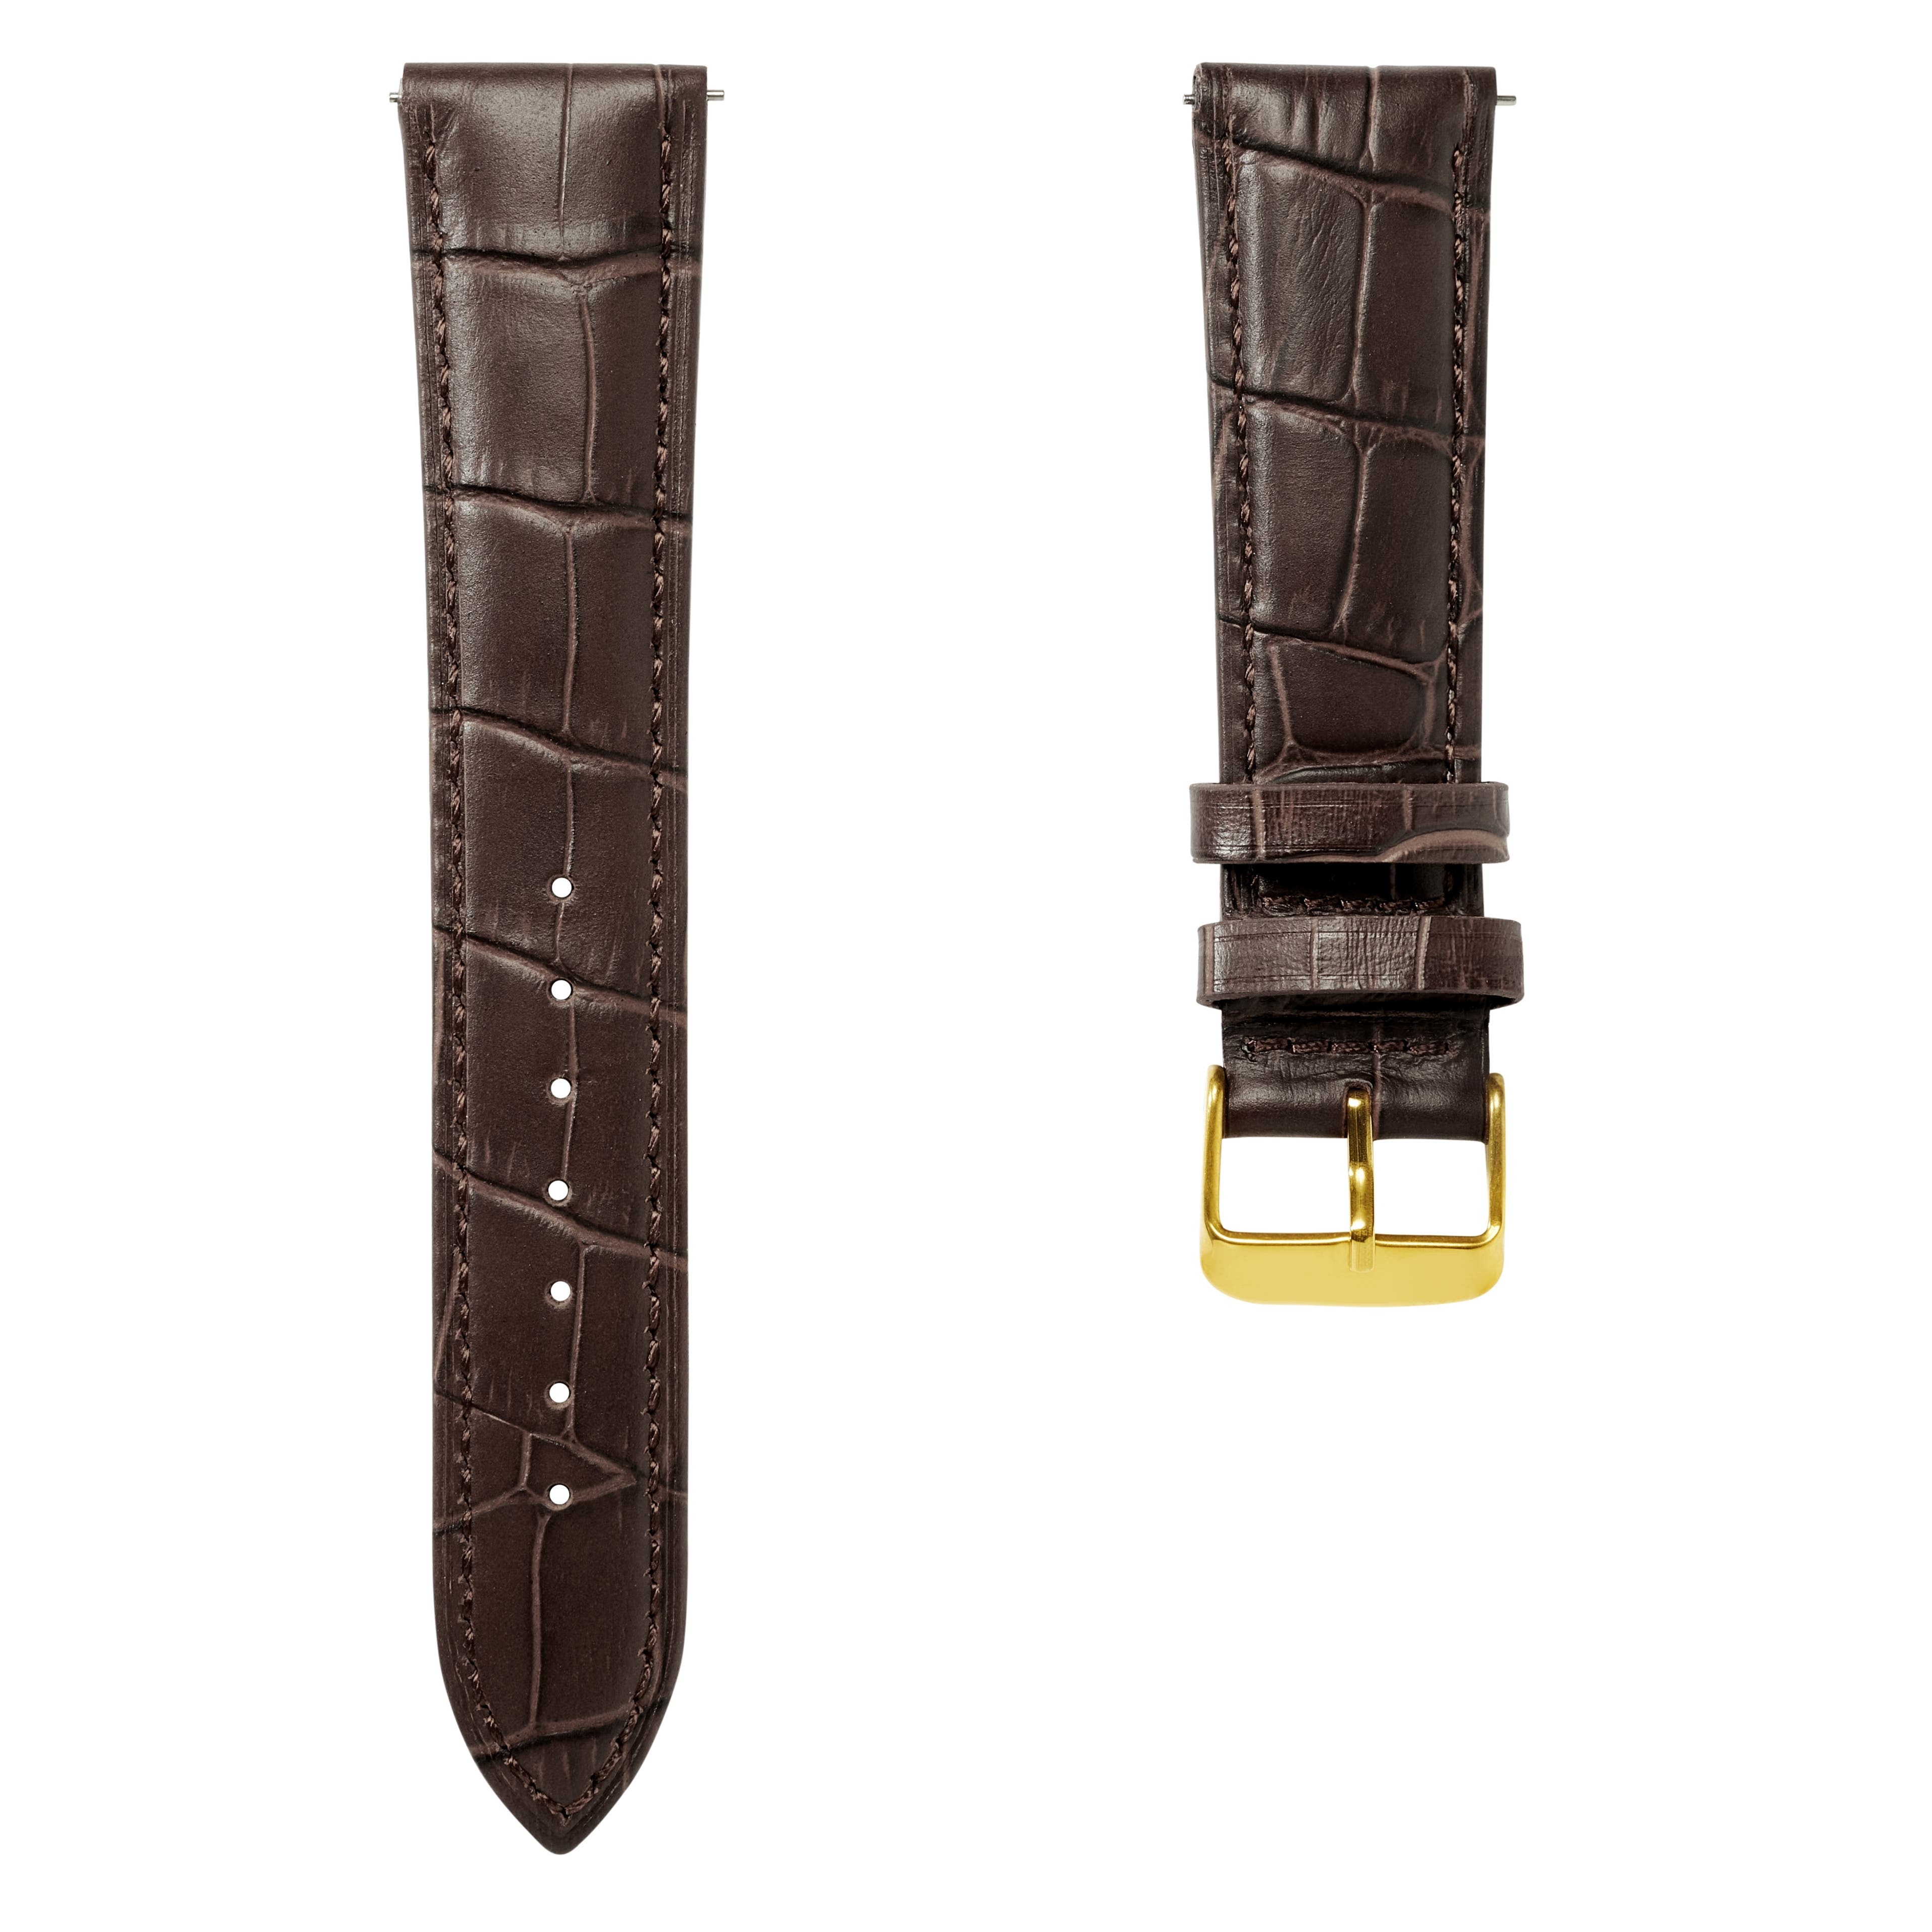 Correa de reloj de cuero marrón oscuro con relieve de cocodrilo y hebilla en tono oro rosa de 22 mm - Liberación rápida